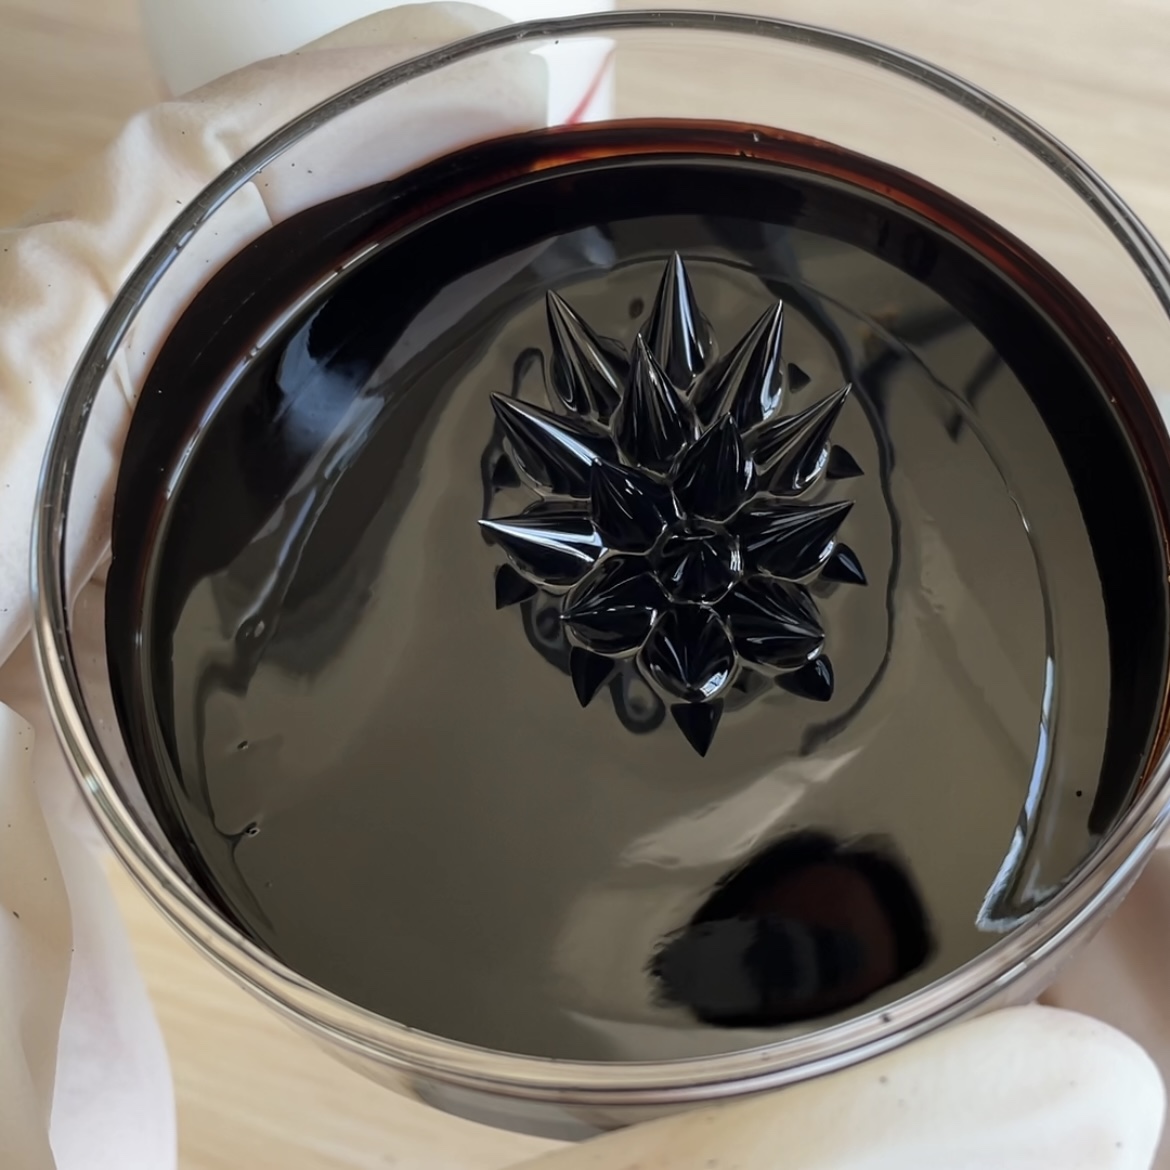 ferrofluid 磁流体原液 学生科学实验创意艺术设计玩具无毒油基